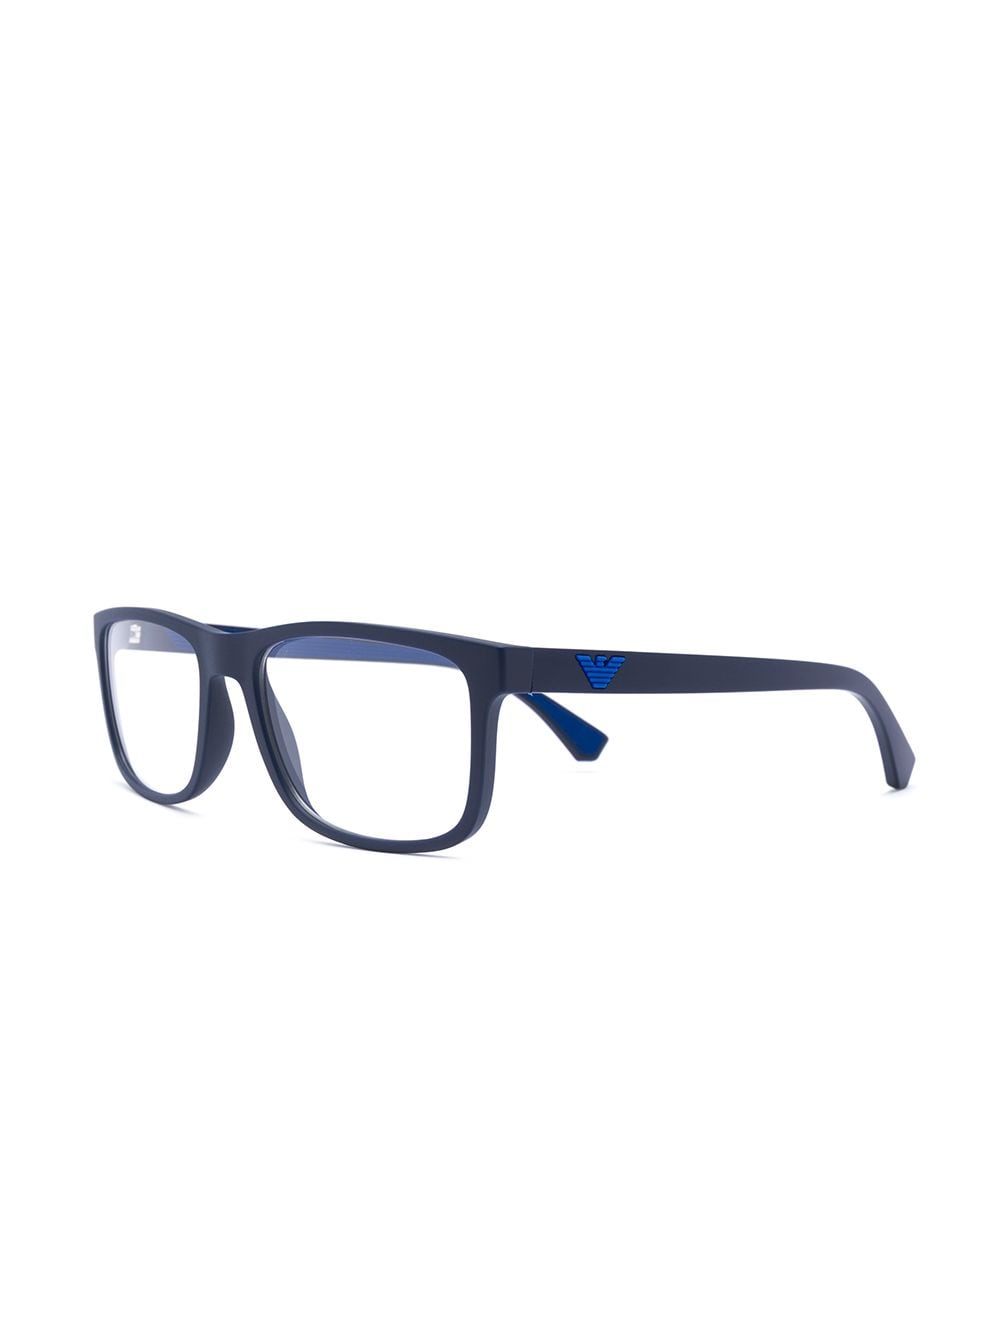 Emporio Armani Square Frames Glasses - Farfetch